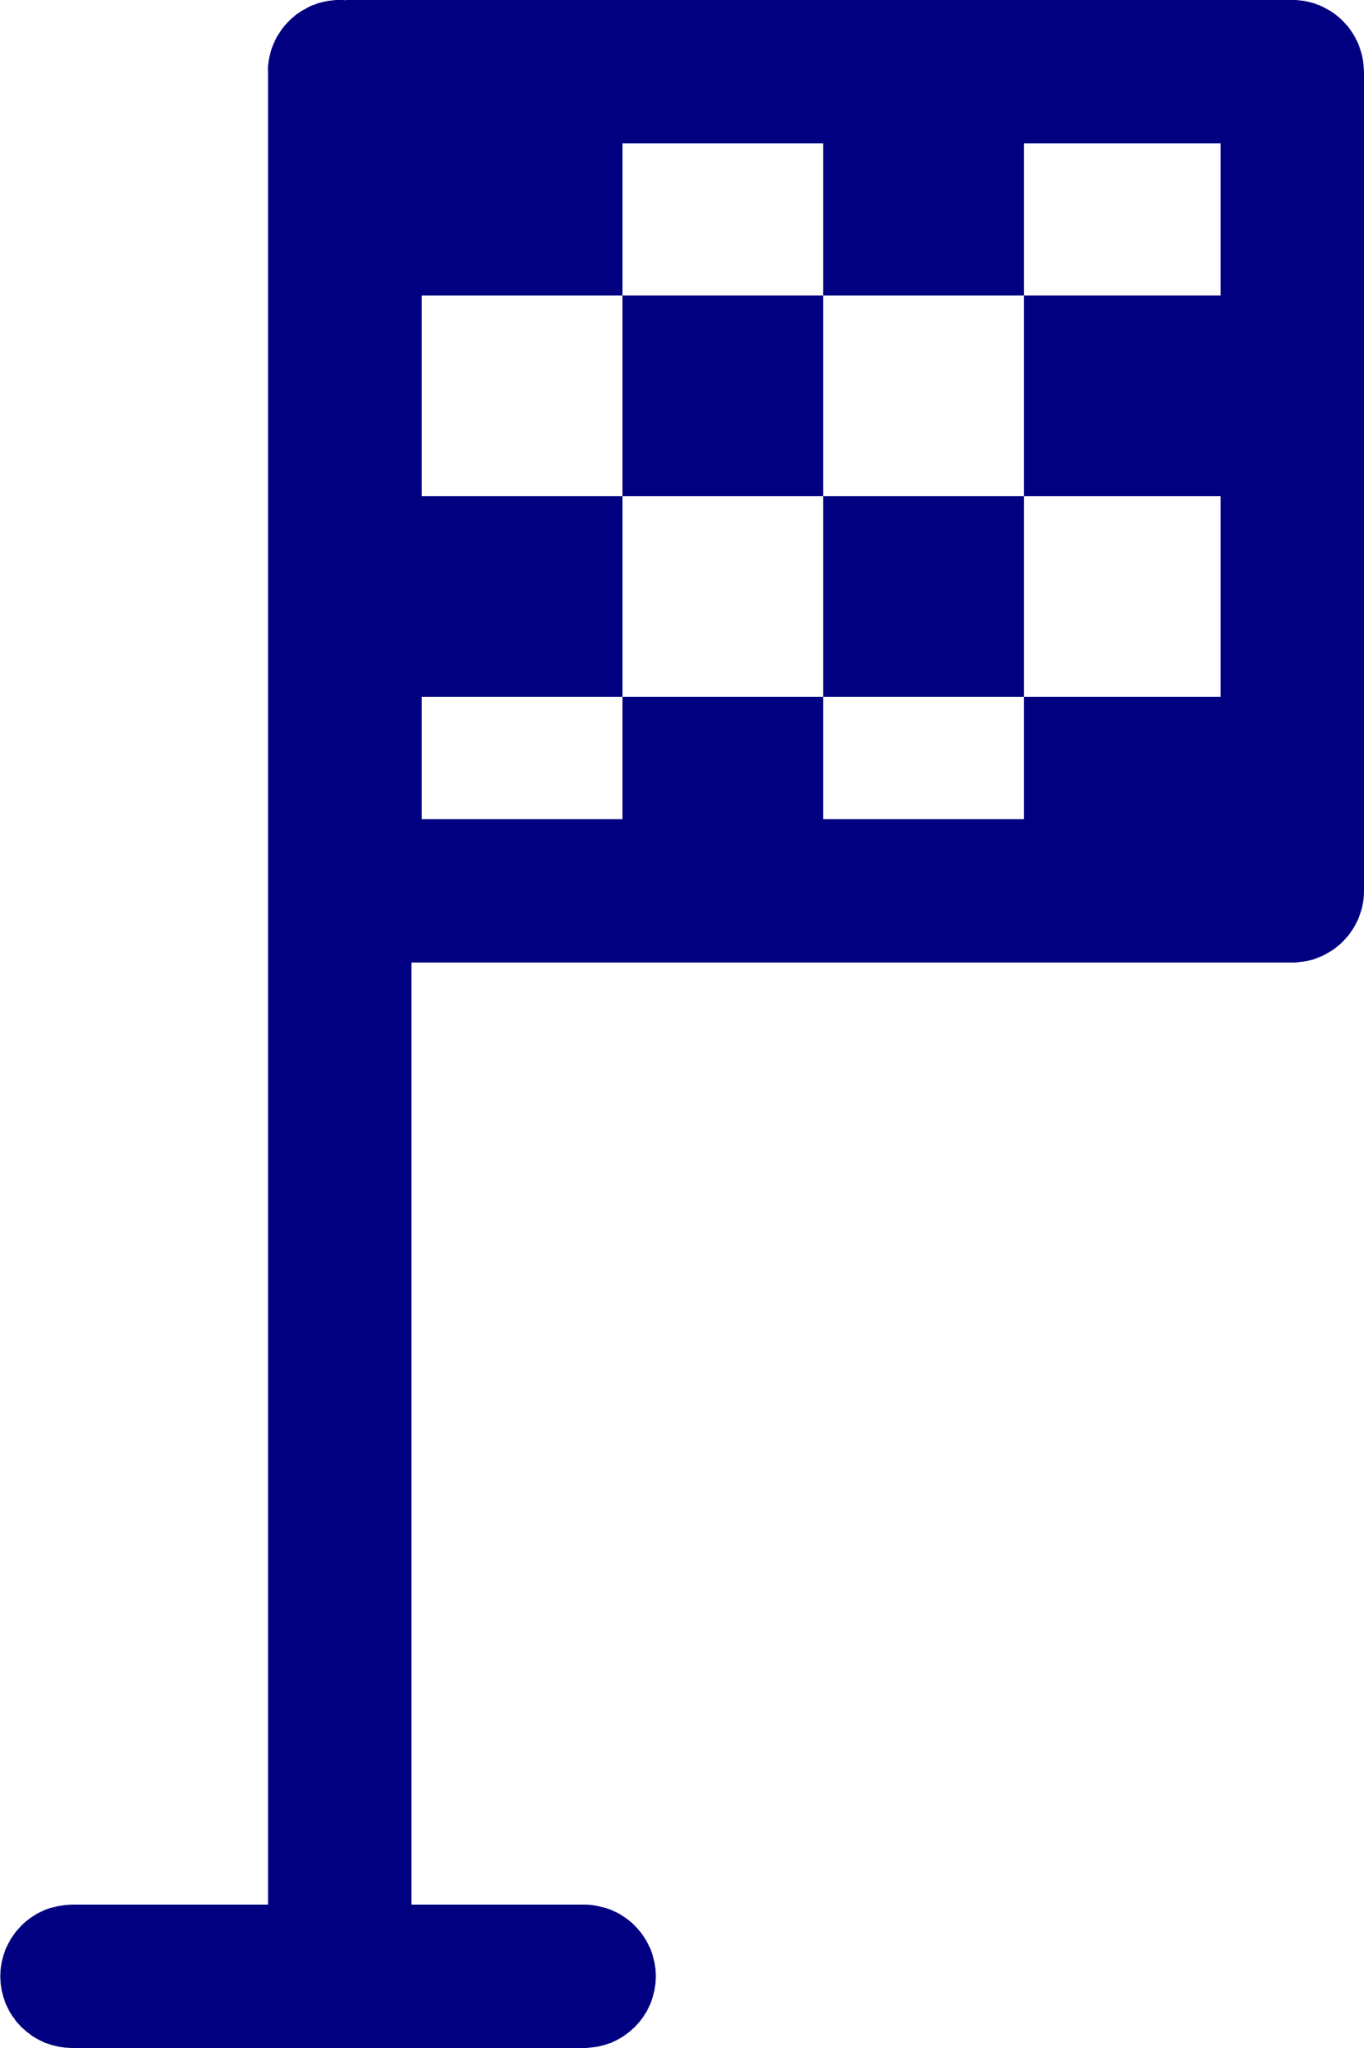 flag finish icon